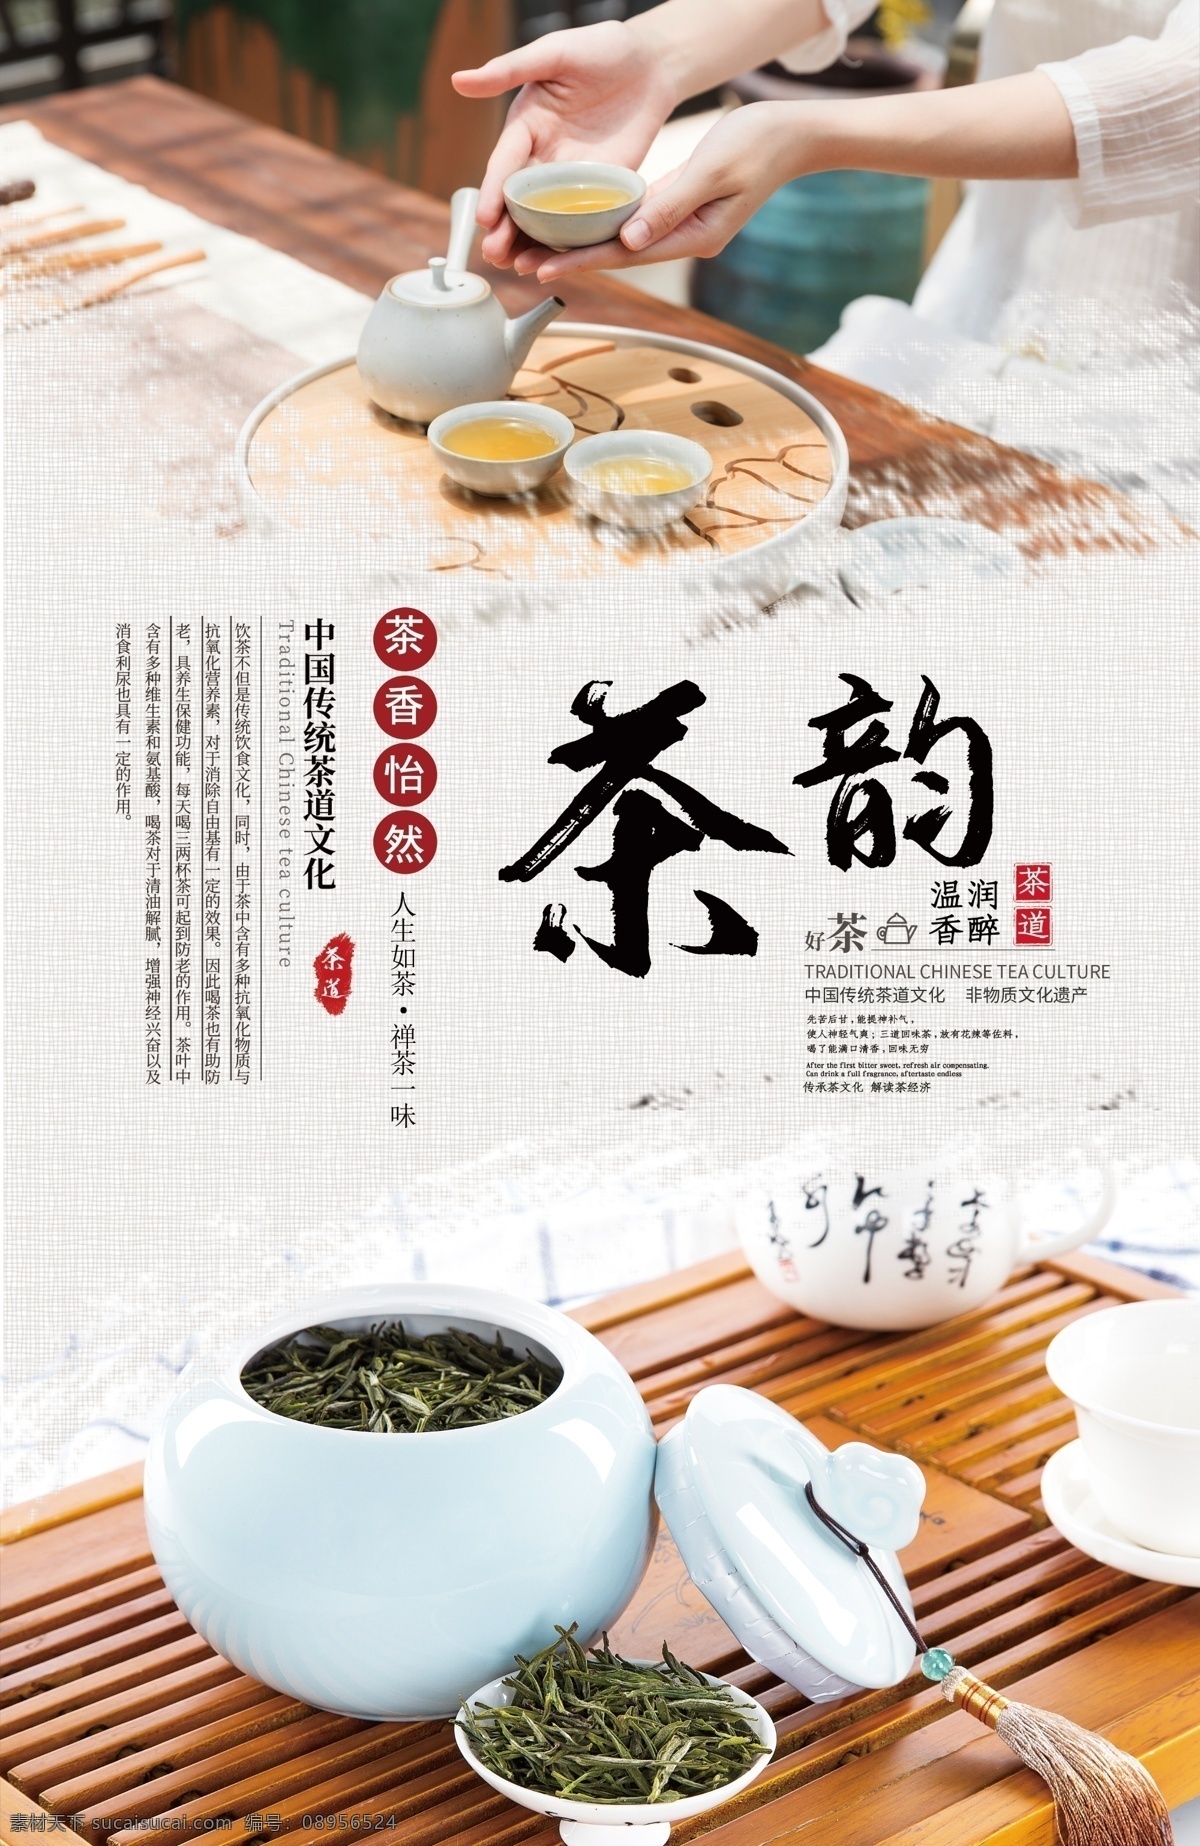 茶 韵 茶文化 海报 茶韵 茶文化海报 中国茶 茶艺 茶道 沏茶 茶叶 红茶 绿茶